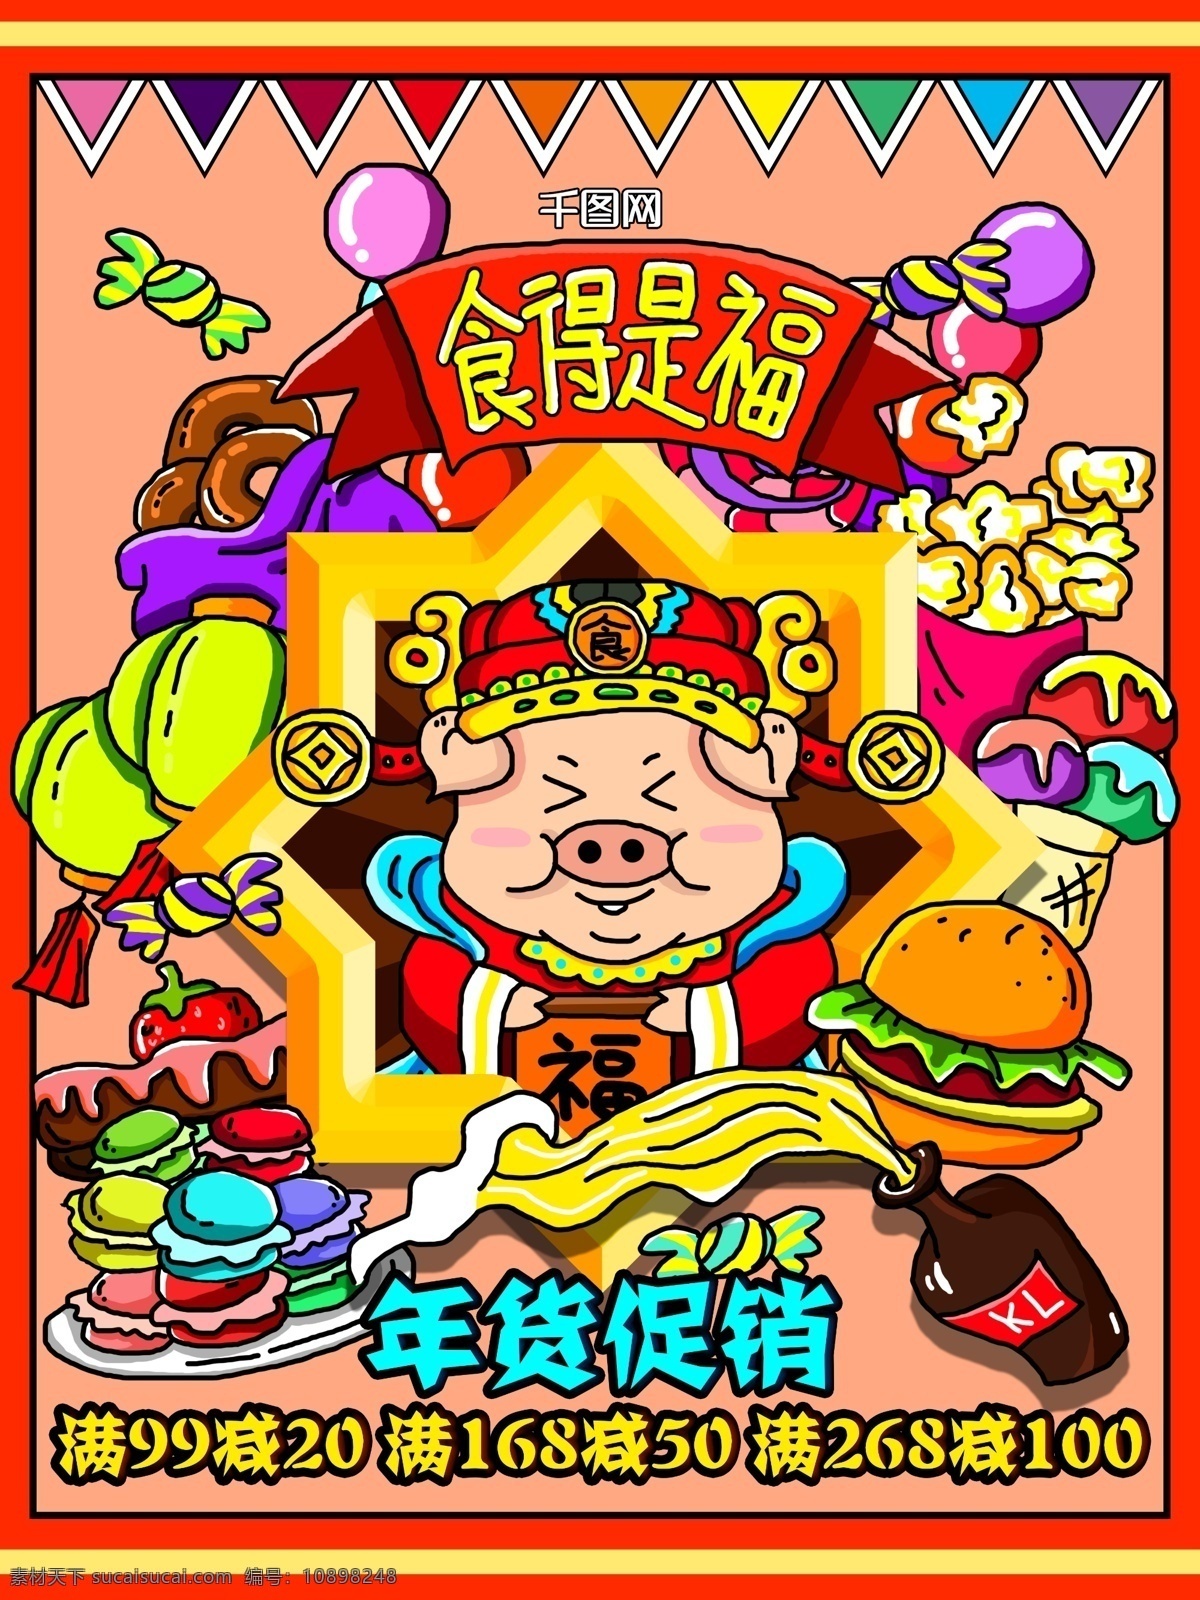 手绘 年货 节 促销 插画 海报 宣传单 美食 福 蛋糕 食物 糖果 猪 2019 甜点 零食 汽水 年货节